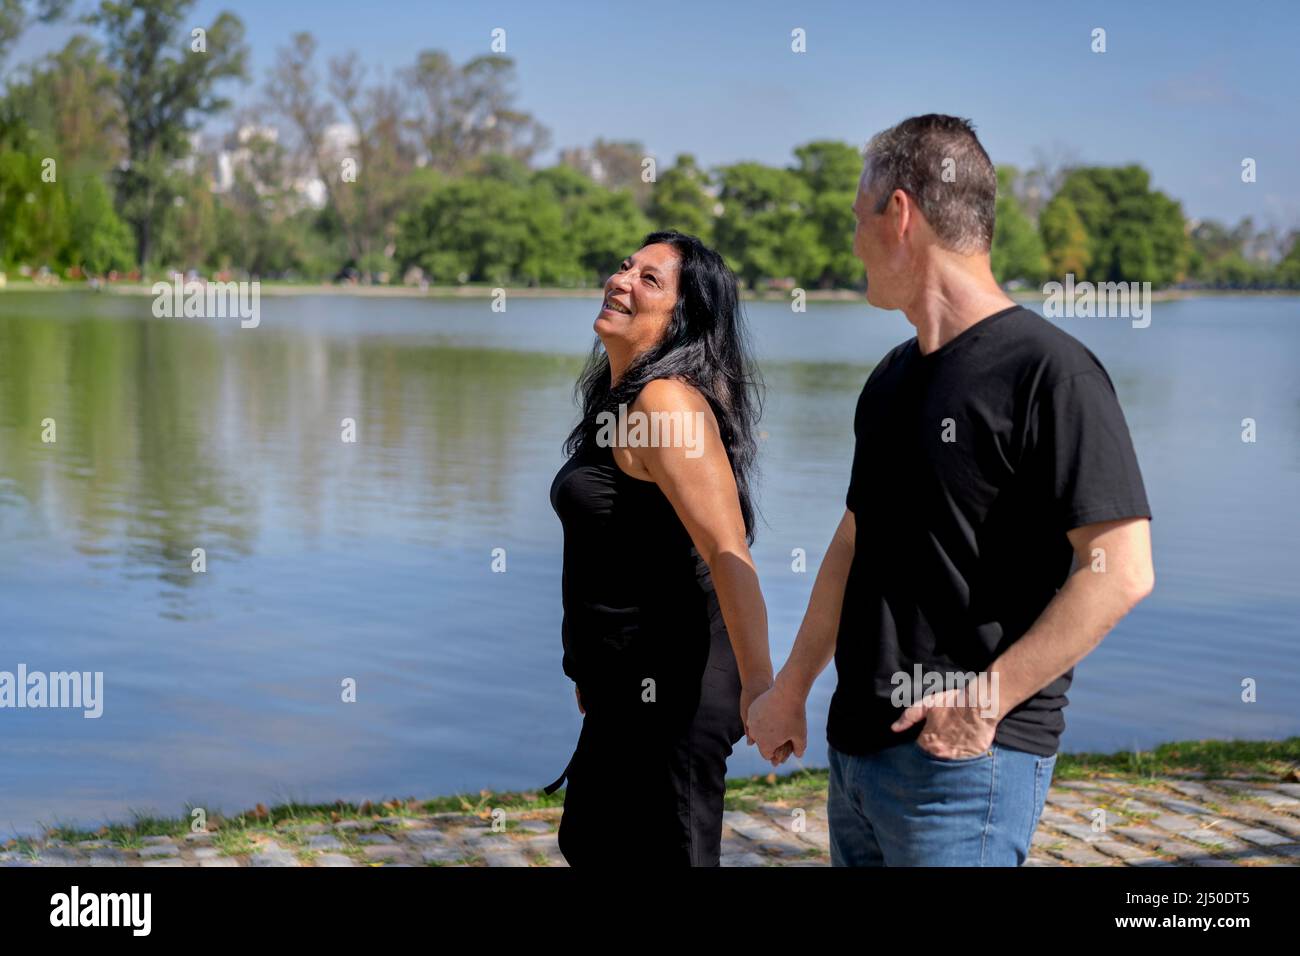 Coppia multietnica formata da una donna andina e da un uomo caucasico che cammina accanto ad un lago. Espressioni felici e volti di amanti Foto Stock